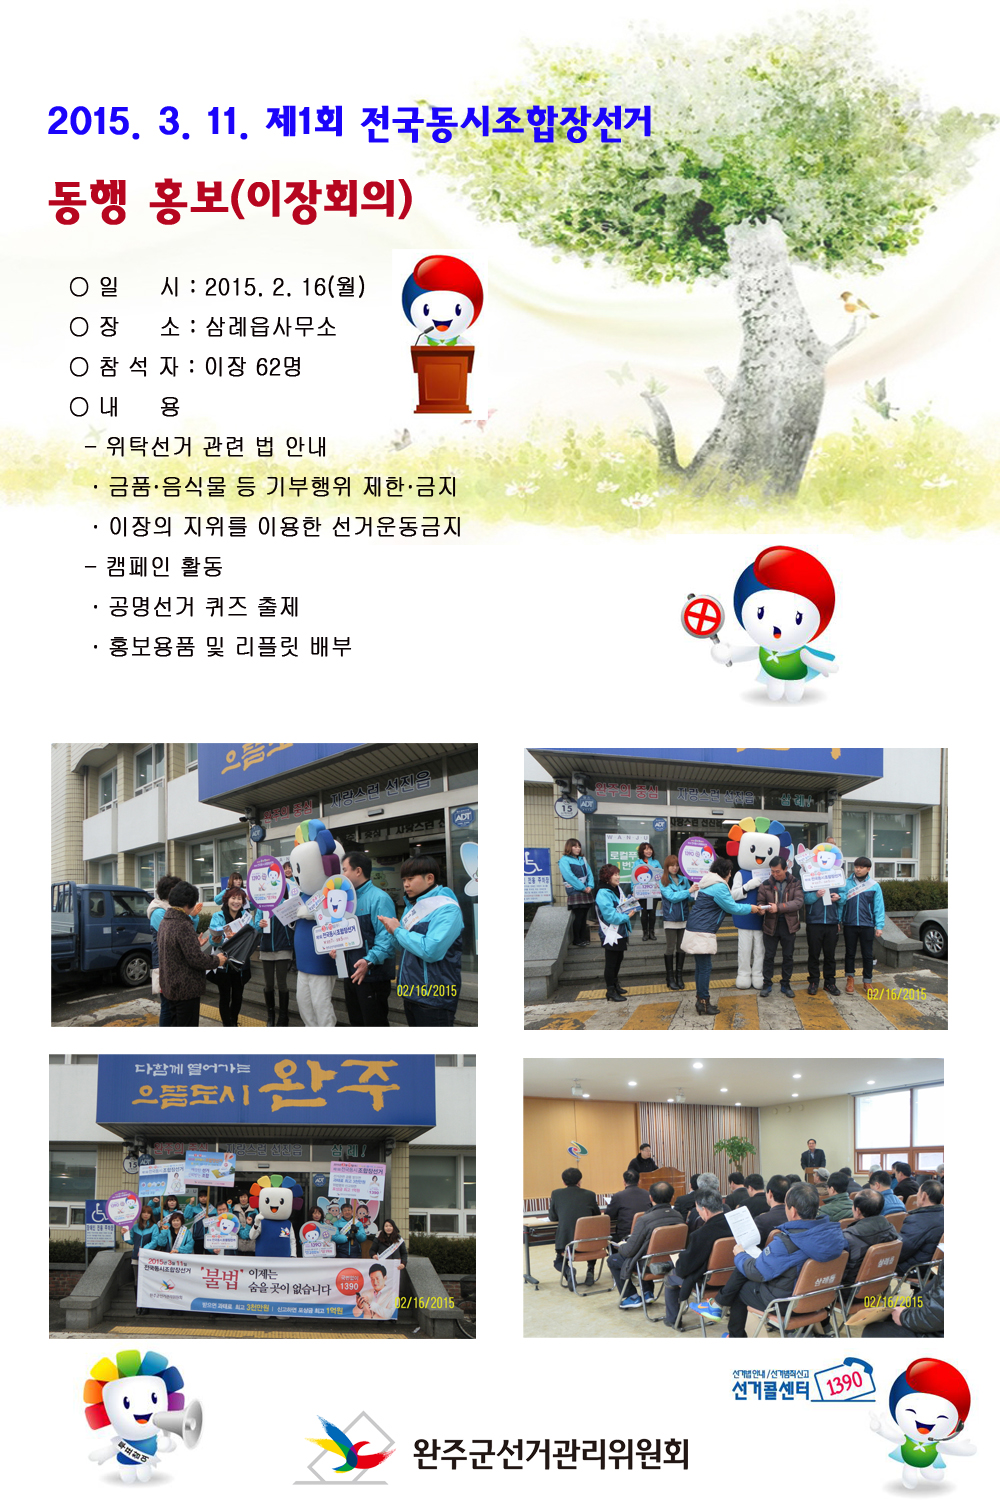 삼례읍사무소 이장회의 장면과 선관위 캐릭터 참참이와의 캠페인